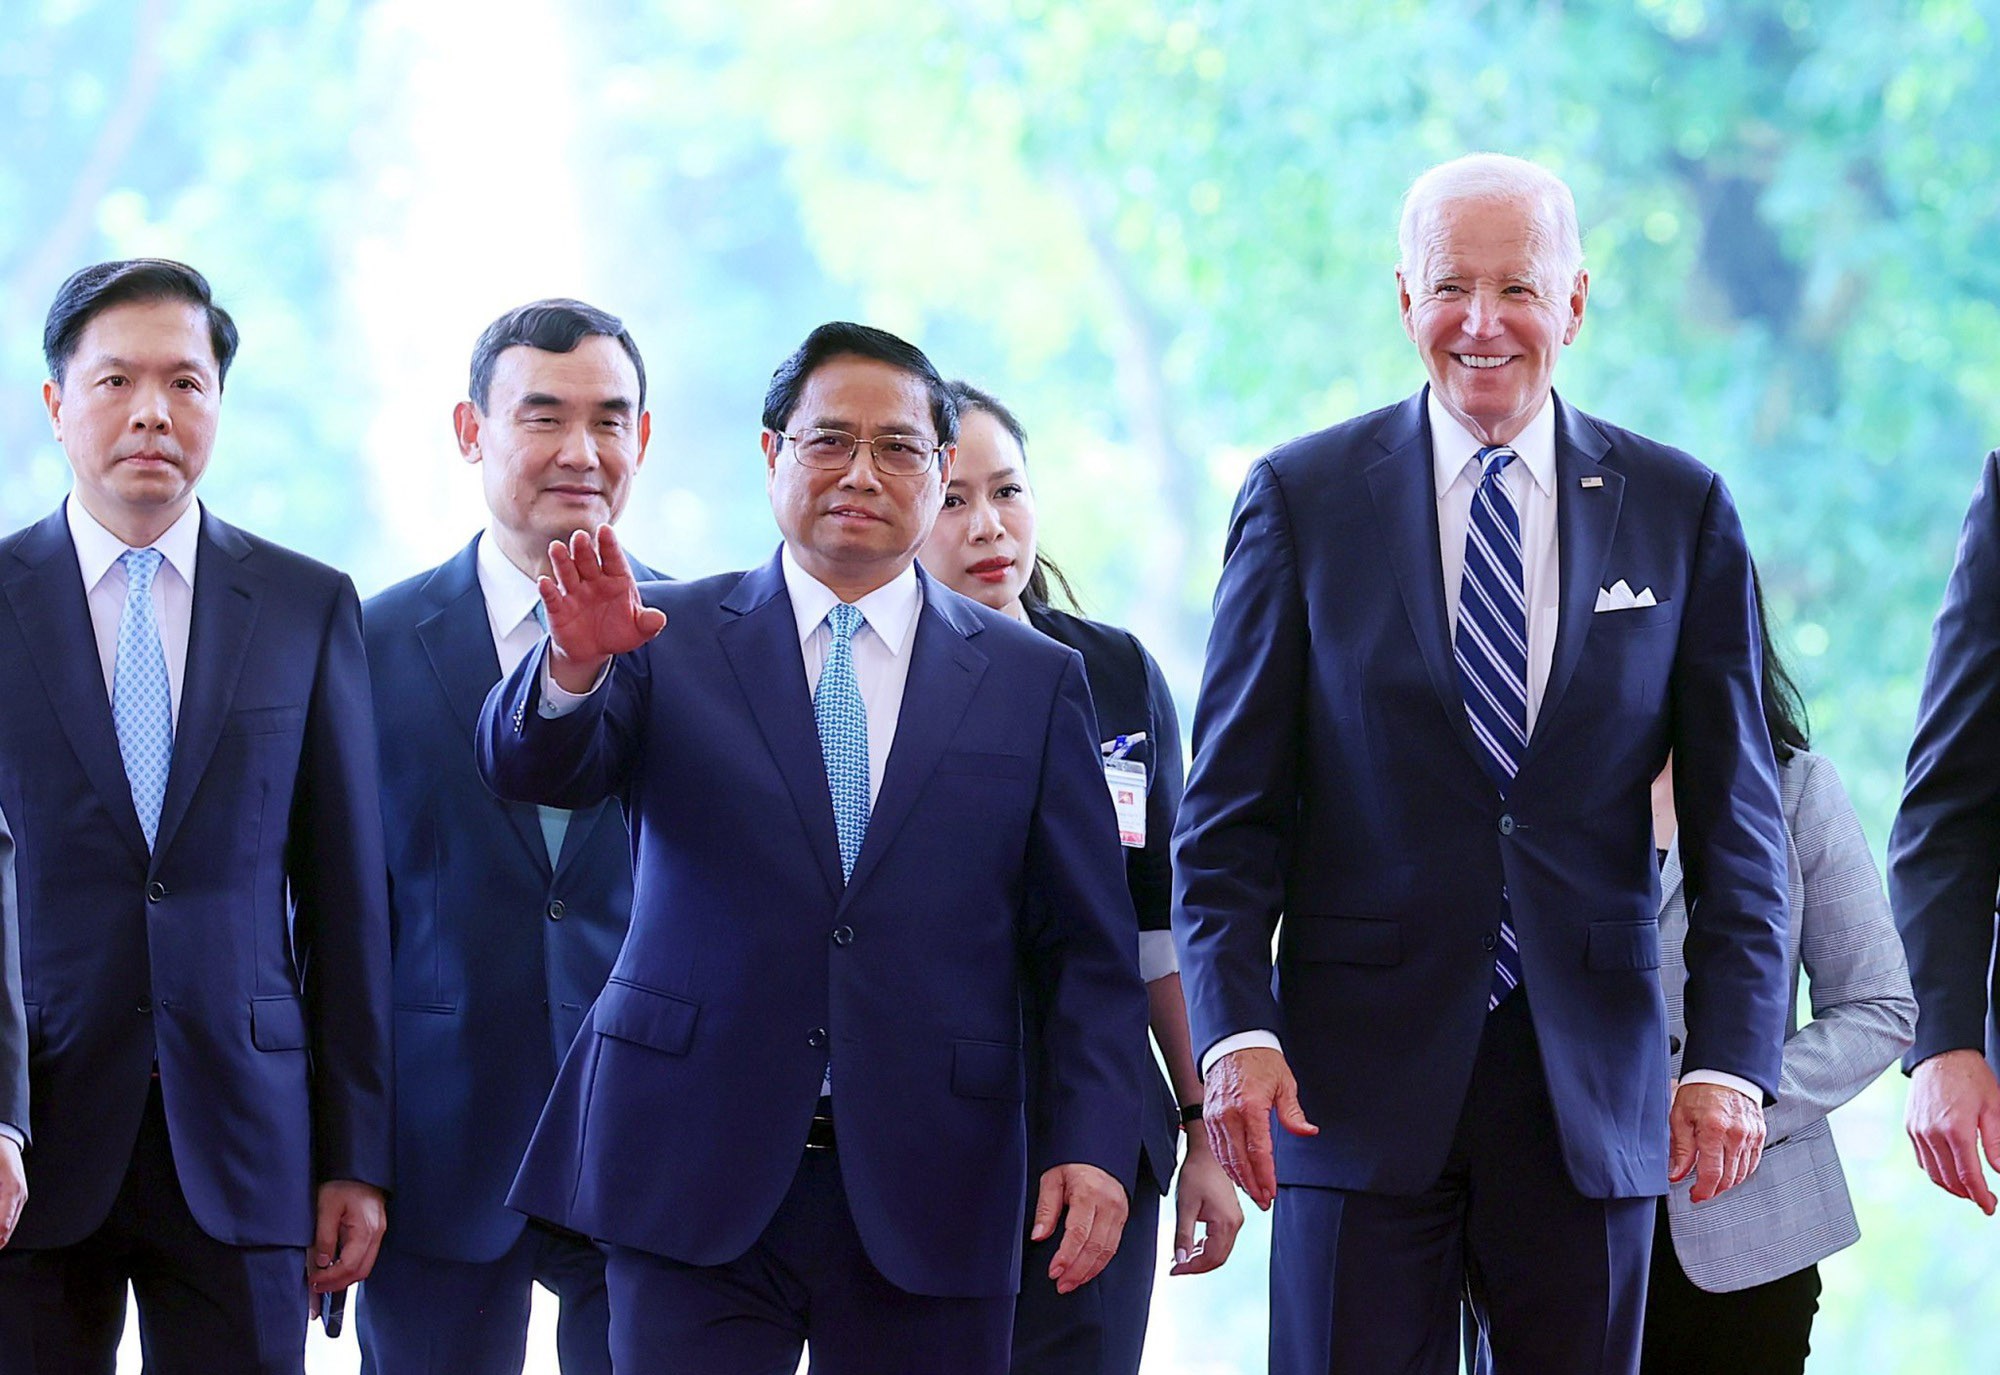 Thủ tướng cho rằng, cần coi hợp tác kinh tế - thương mại - đầu tư là “động cơ vĩnh cửu” của quan hệ song phương, đề nghị phía Hoa Kỳ sớm công nhận Quy chế kinh tế thị trường của Việt Nam, cũng như nâng cấp Hiệp định khung về thương mại và đầu tư, tiếp tục khuyến khích các doanh nghiệp công nghệ cao của Hoa Kỳ làm ăn kinh doanh tại Việt Nam; tạo đột phá trong hợp tác khoa học công nghệ, đổi mới sáng tạo, giáo dục – đào tạo; đồng thời thúc đẩy mạnh mẽ hơn nữa hợp tác trong chống biến đổi khí hậu, tăng trưởng xanh, phát triển năng lượng tái tạo.